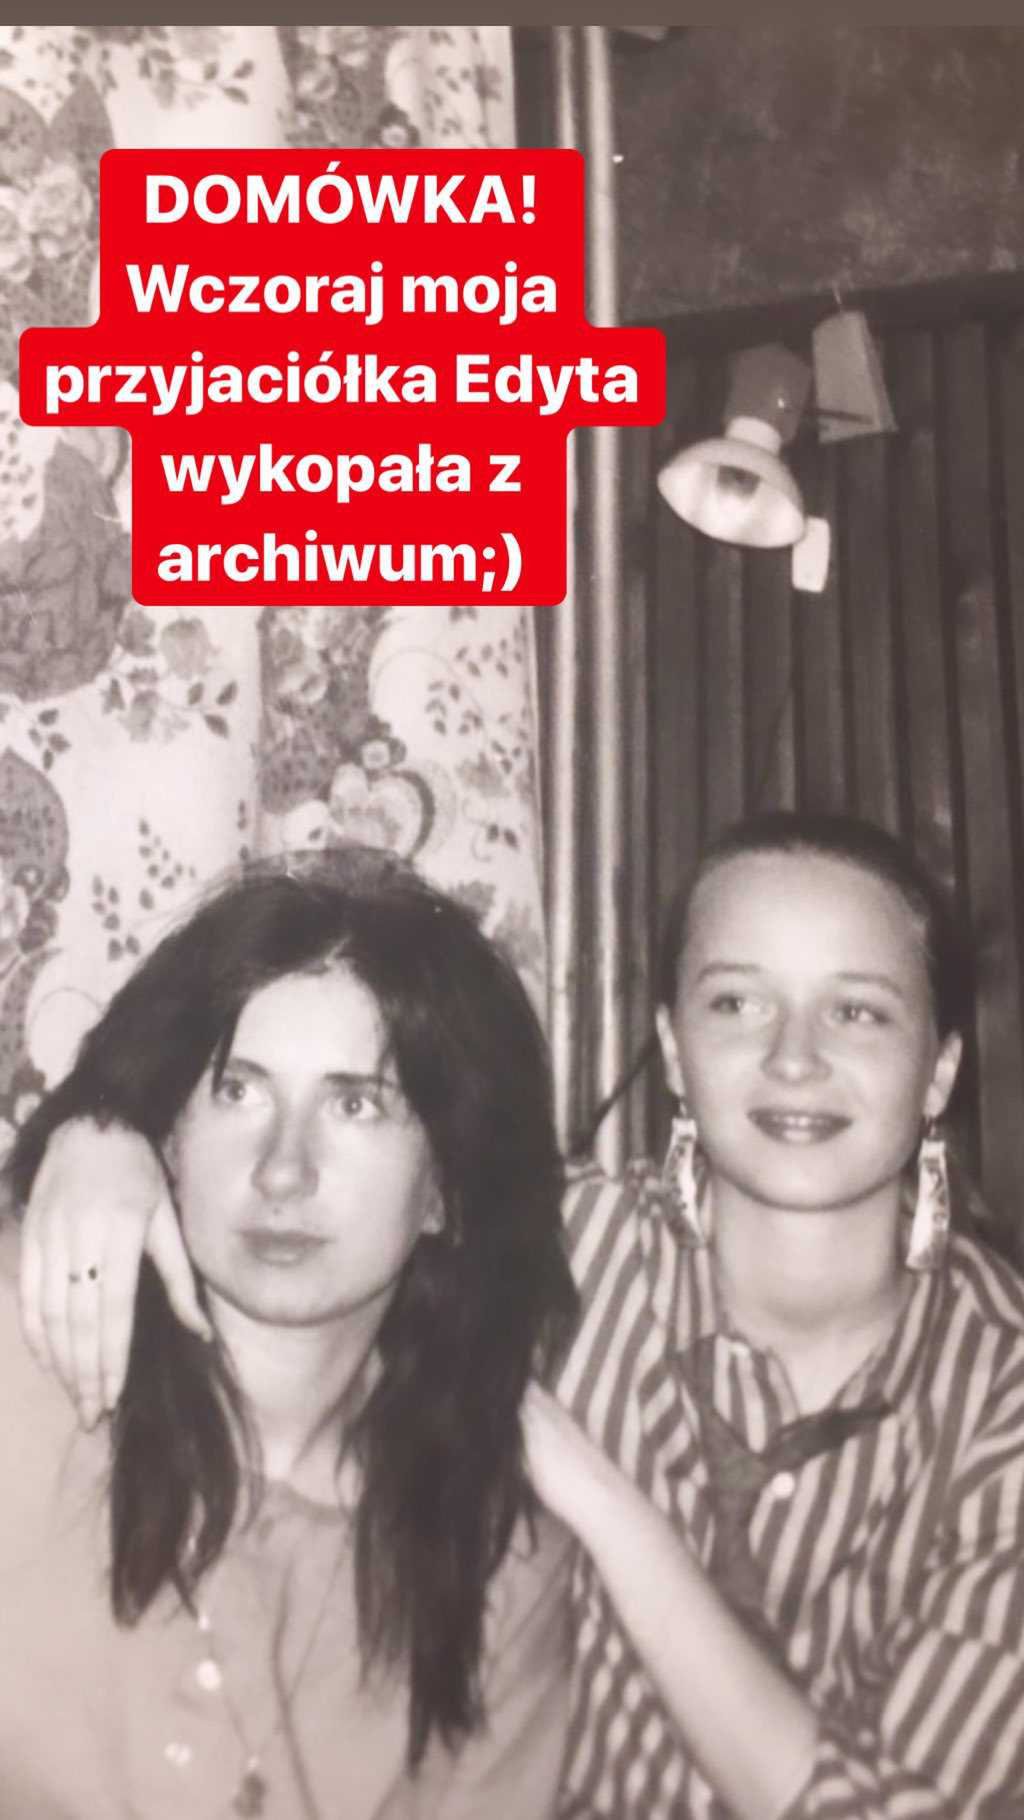 Joanna Przetakiewicz w młodości. Jak wyglądała?